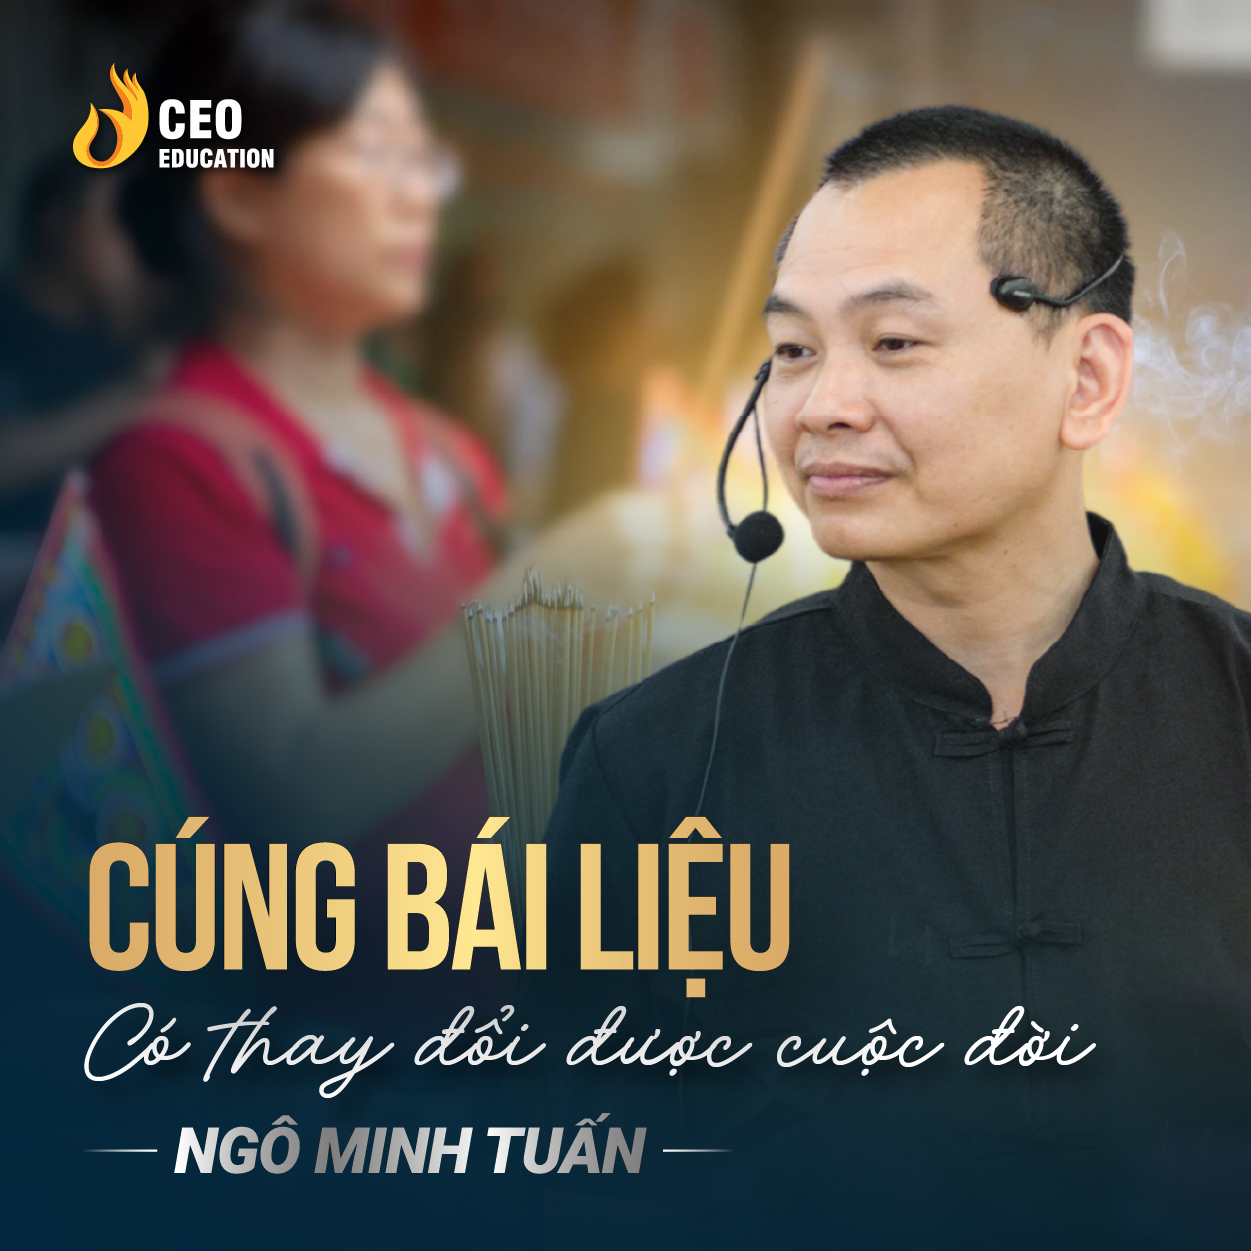 Cúng bái liệu có thay đổi được cuộc đời | Ngô Minh Tuấn | Học Viện CEO Việt Nam